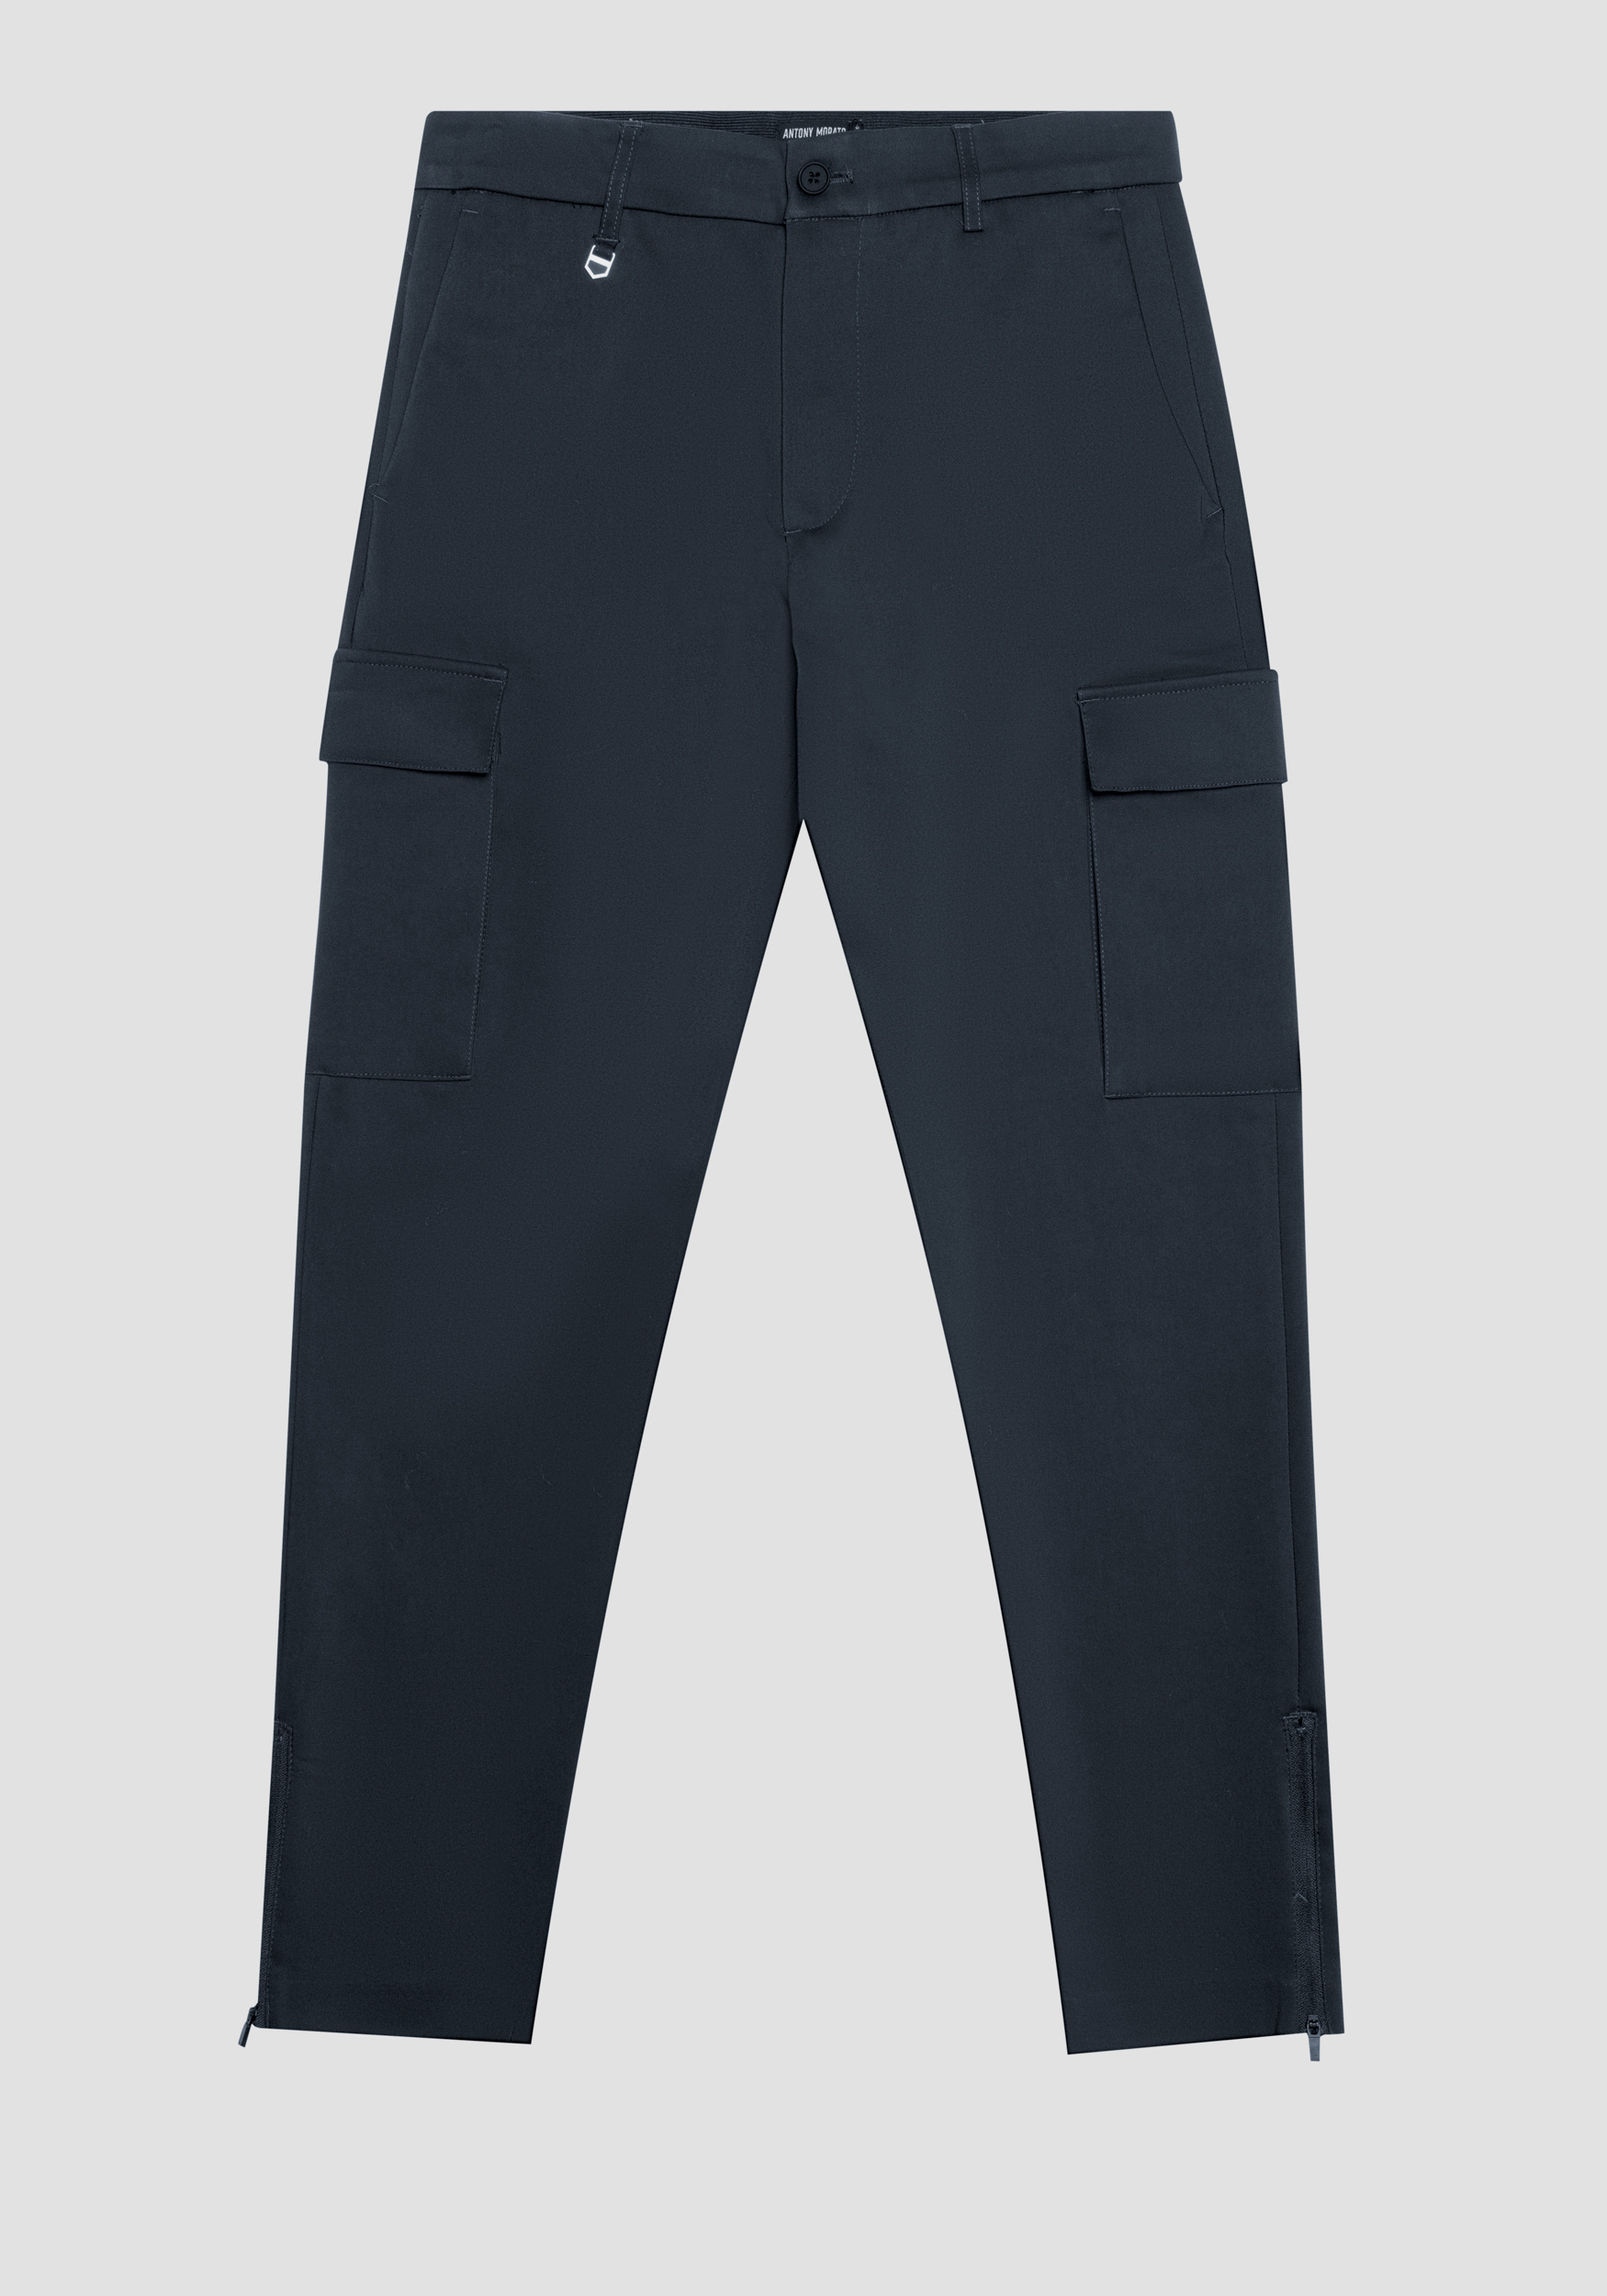 Antony Morato Pantalon Skinny Fit Bjorn En Coton Melange Elastique Avec Poches Laterales Et Zip Sur Le Bas Encre Bleu | Homme Pantalons